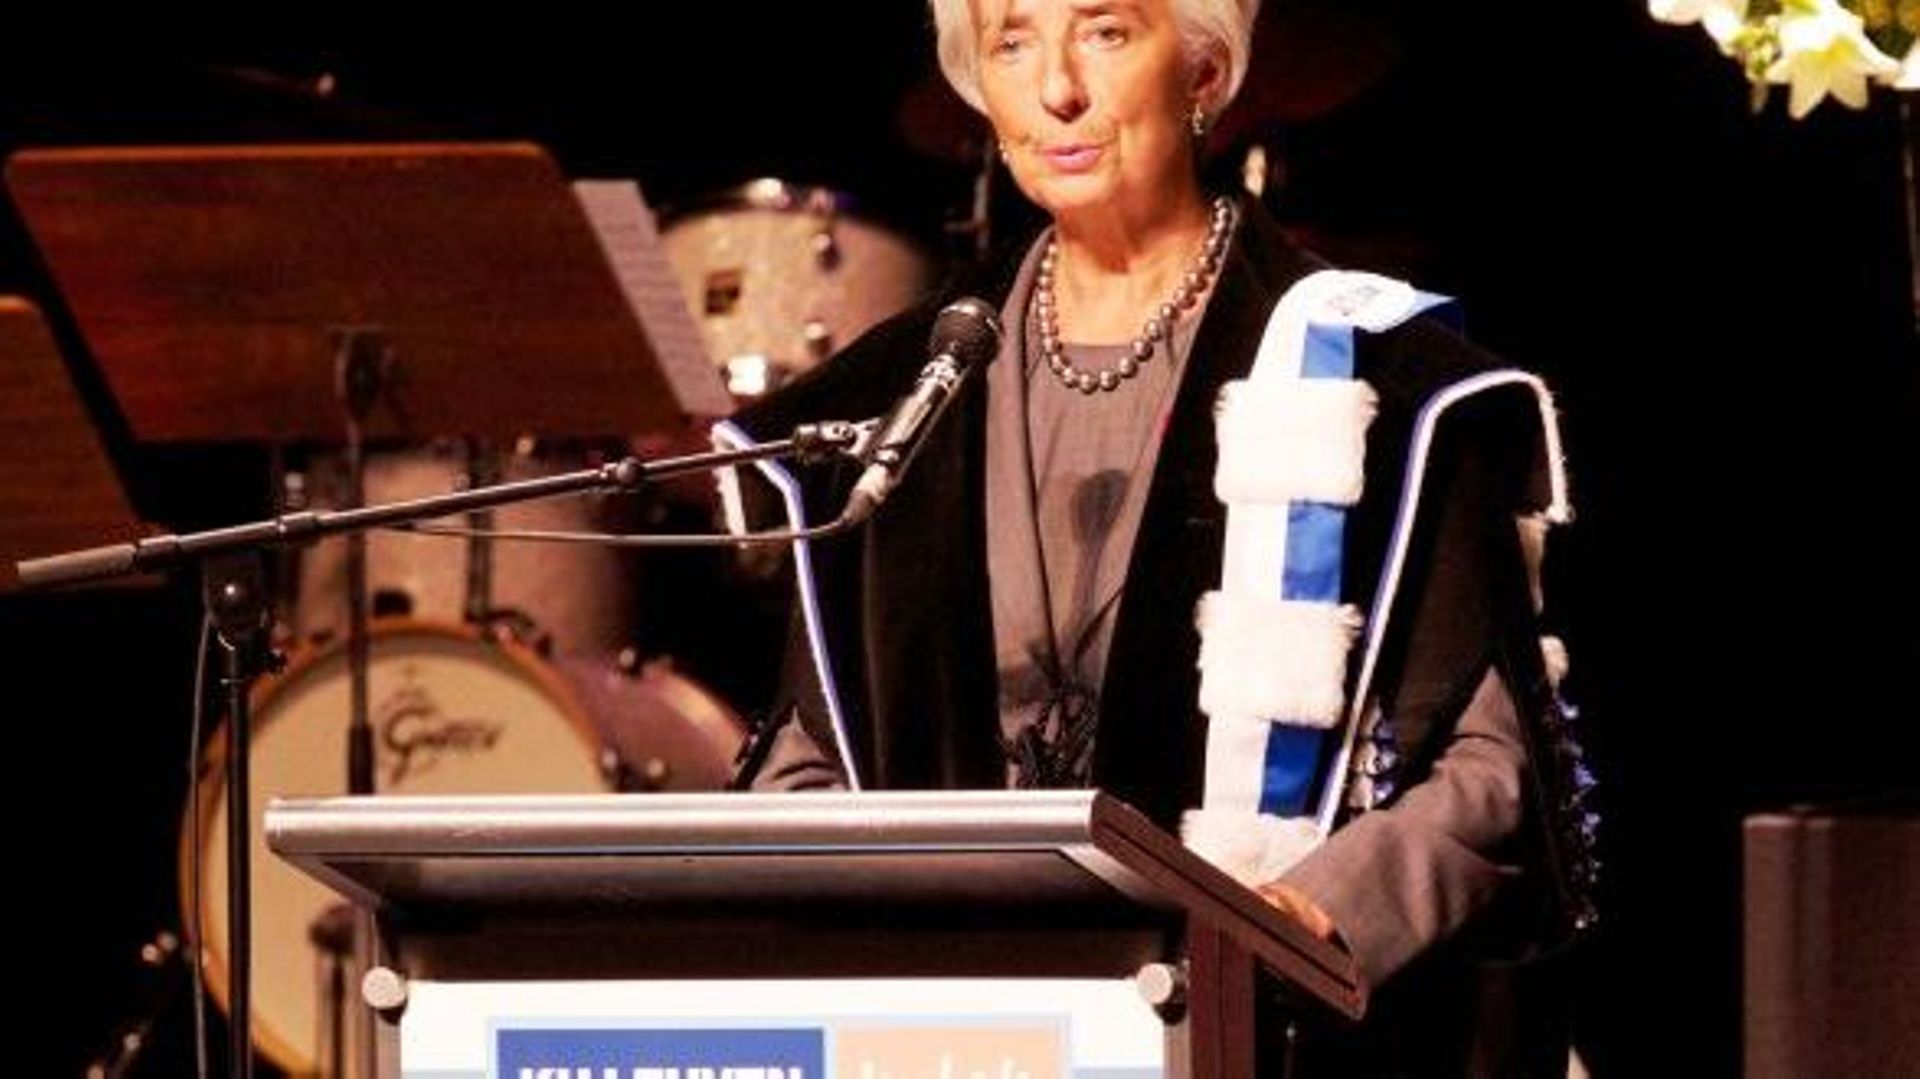 La directrice du FMI estime que l'index salarial est obsolète